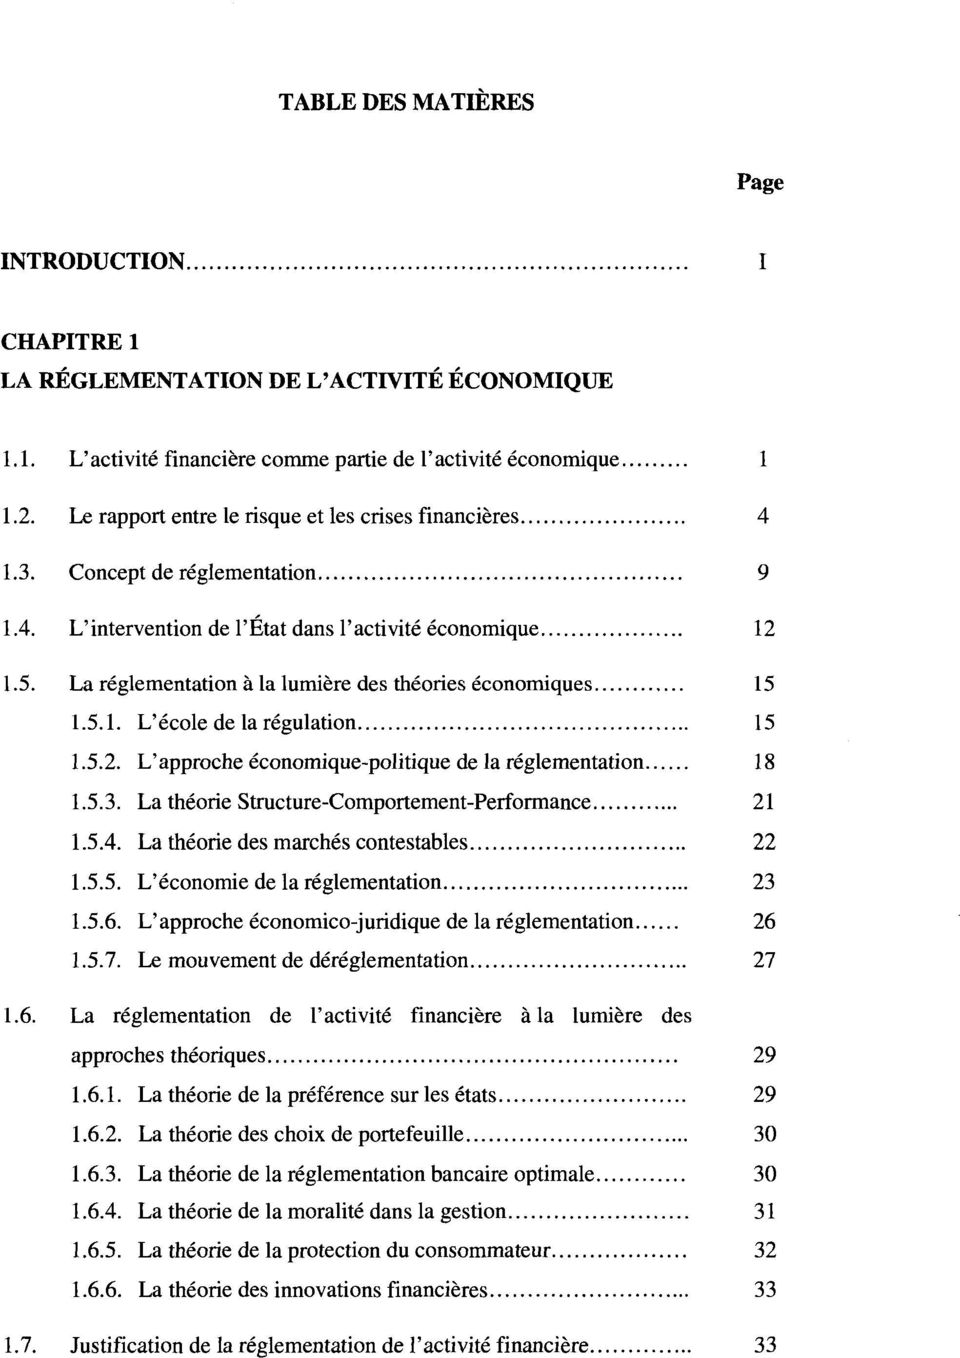 La reglementation a la lumiere des theories economiques 15 1.5.1. L'ecole de la regulation 15 1.5.2. L'approche economique-politique de la reglementation 18 1.5.3.